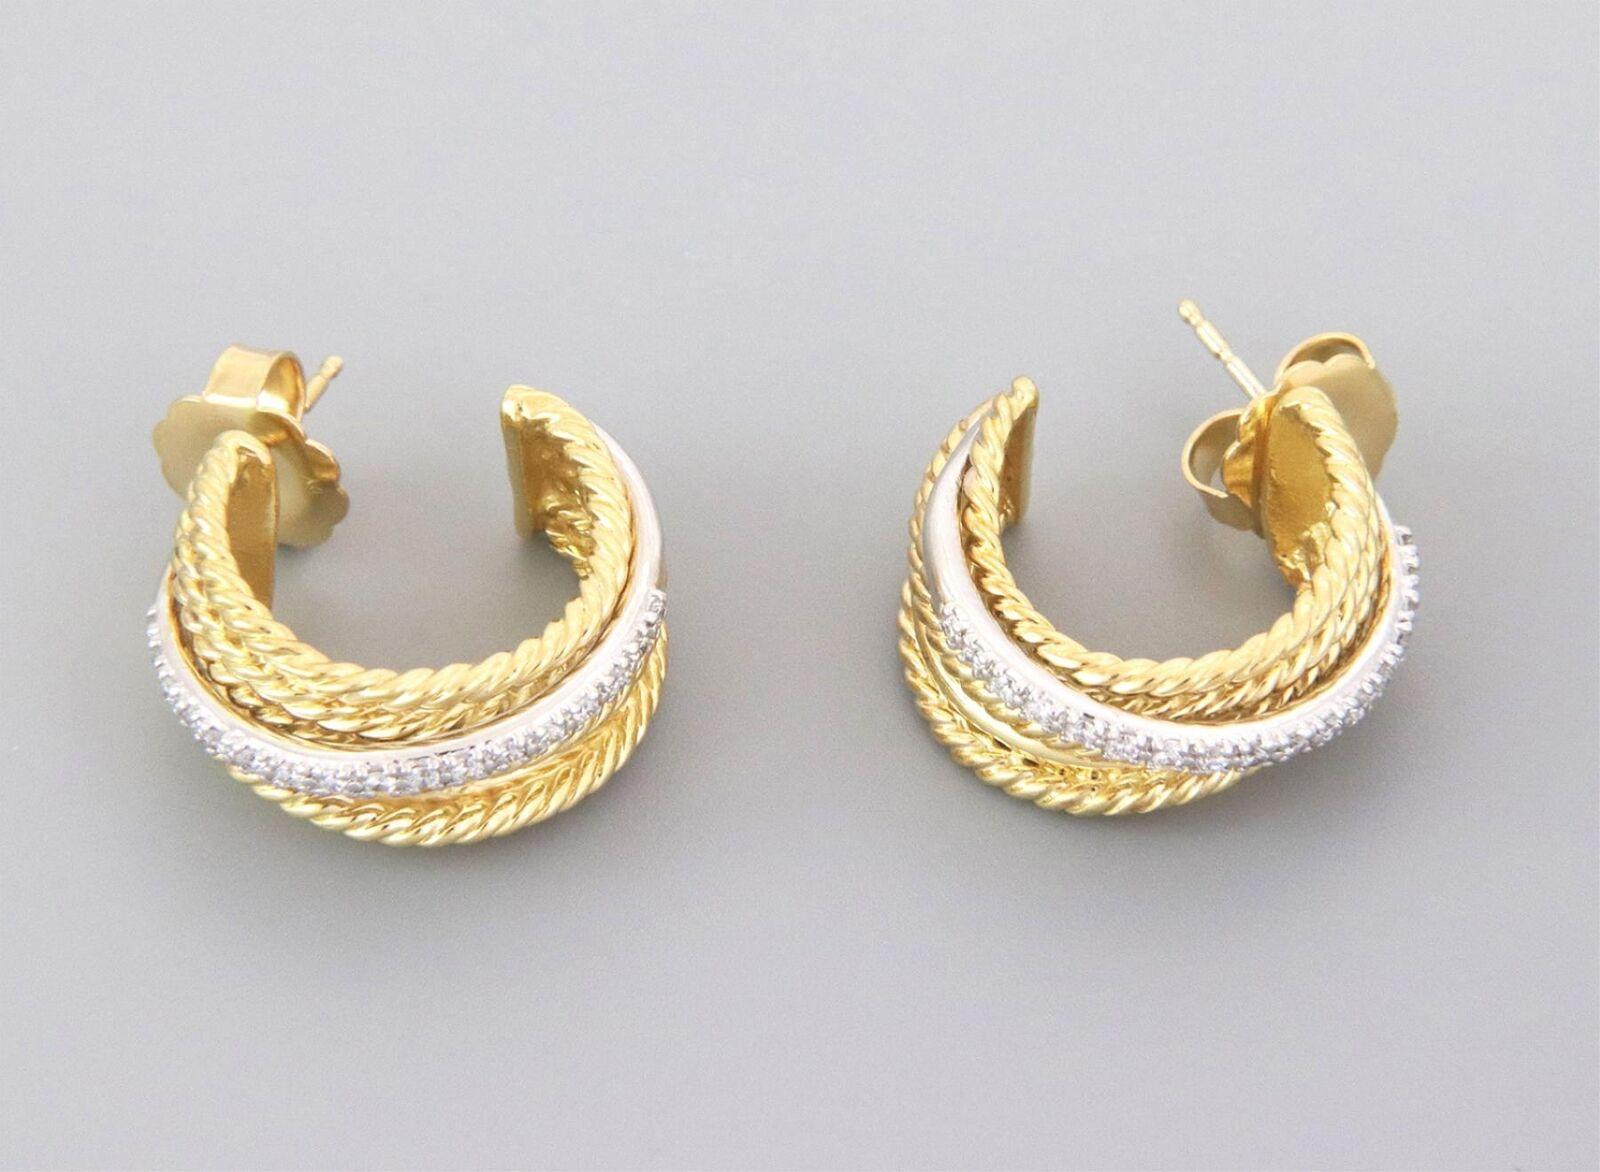 Brilliant Cut David Yurman 18k Gold & Diamonds Crossover Hoop Earrings